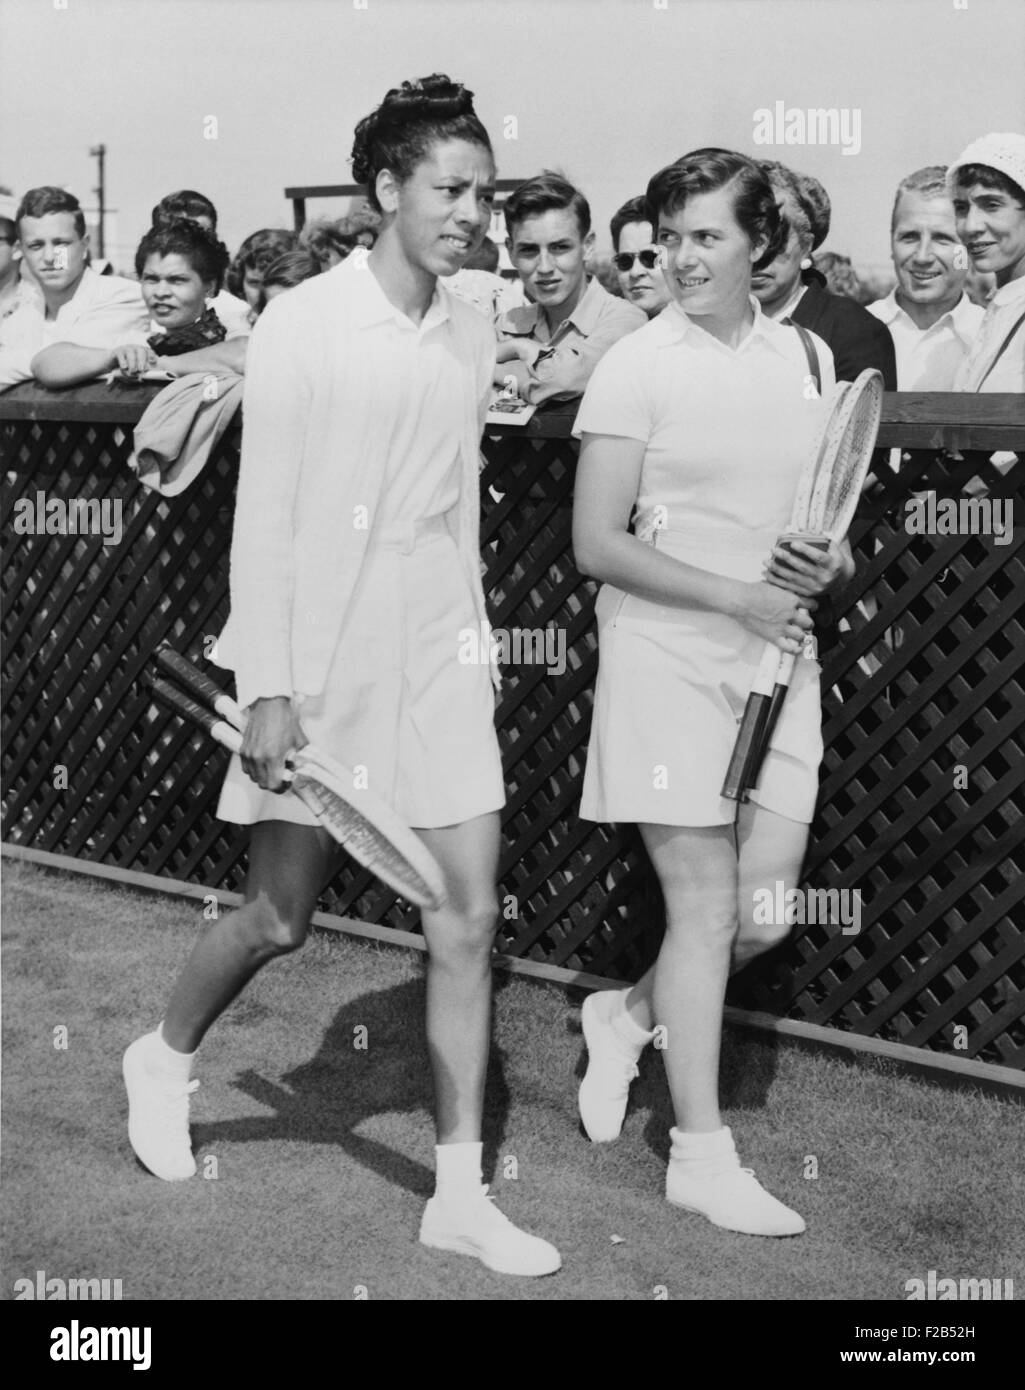 Althea Gibson und Barbara Knapp Fuß auf dem Rasen in Forest Hills im Jahr 1950. Gibson gewann 10 gerade Meisterschaften 1947 in getrennten ATA (American Tennis Association). Als USLTA (US-Lawn Tennis Association) nicht aufzufordern, um alle Qualifikationsturniere, Alice Marmor, ein viermaliger Gewinner in Forest Hills, protestierte und Engstirnigkeit vorgeworfen. Im nächsten Jahr spielte Gibson in Forest Hills. -(BSLOC 2015 1 126) Stockfoto